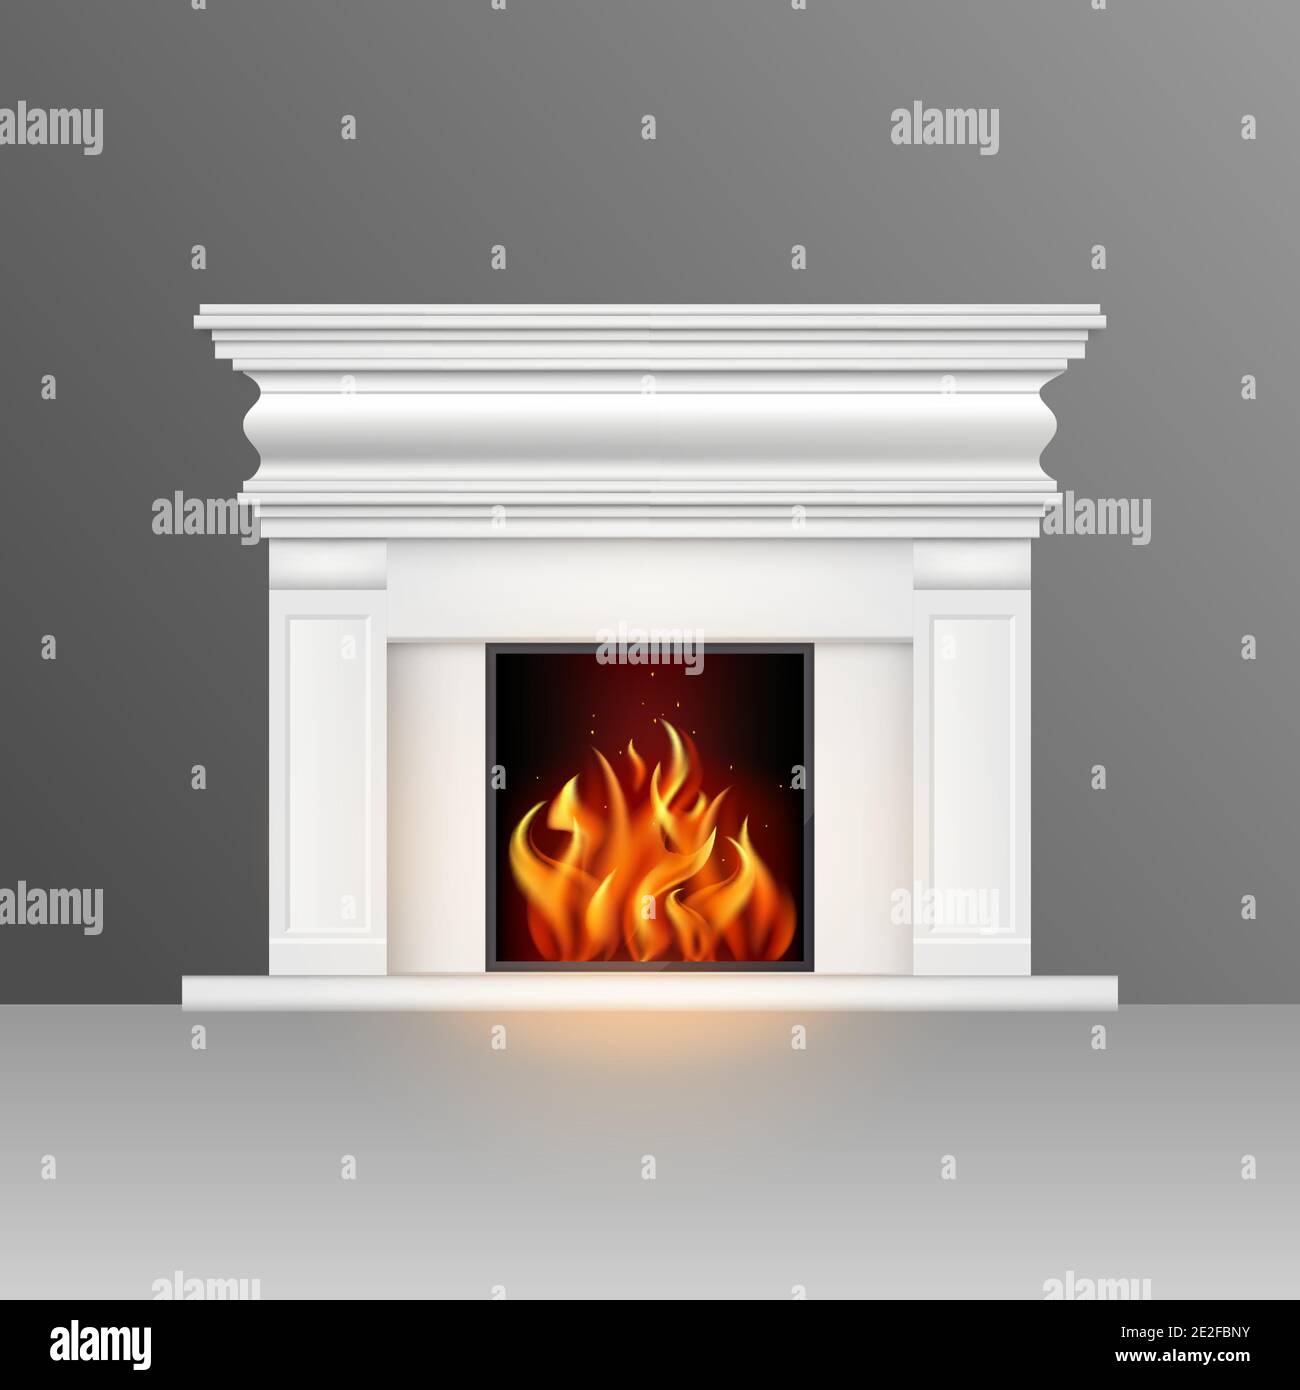 Weißer Kamin mit natürlichem Feuer im klassischen Stil. Element des Innenraums des Wohnzimmers. Vektorgrafik. Stock Vektor